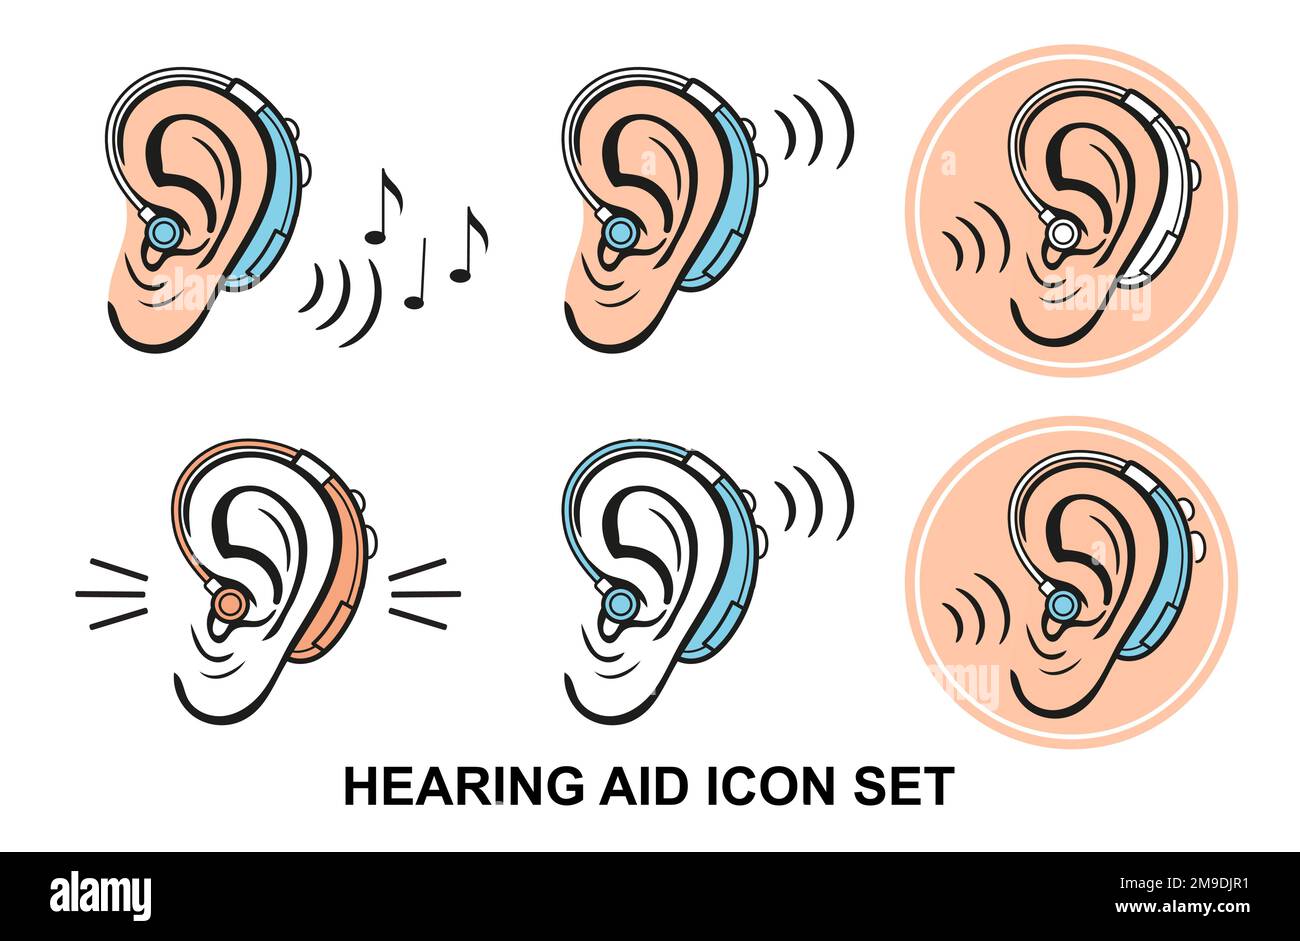 Hörgerät für Gehörlose, Hörgeschädigte, medizinisches Hörgerät für Hörgeräusche, Verbesserung der menschlichen Tonwahrnehmung Symbolsatz. Taubheitsproblem. Vektor Stock Vektor